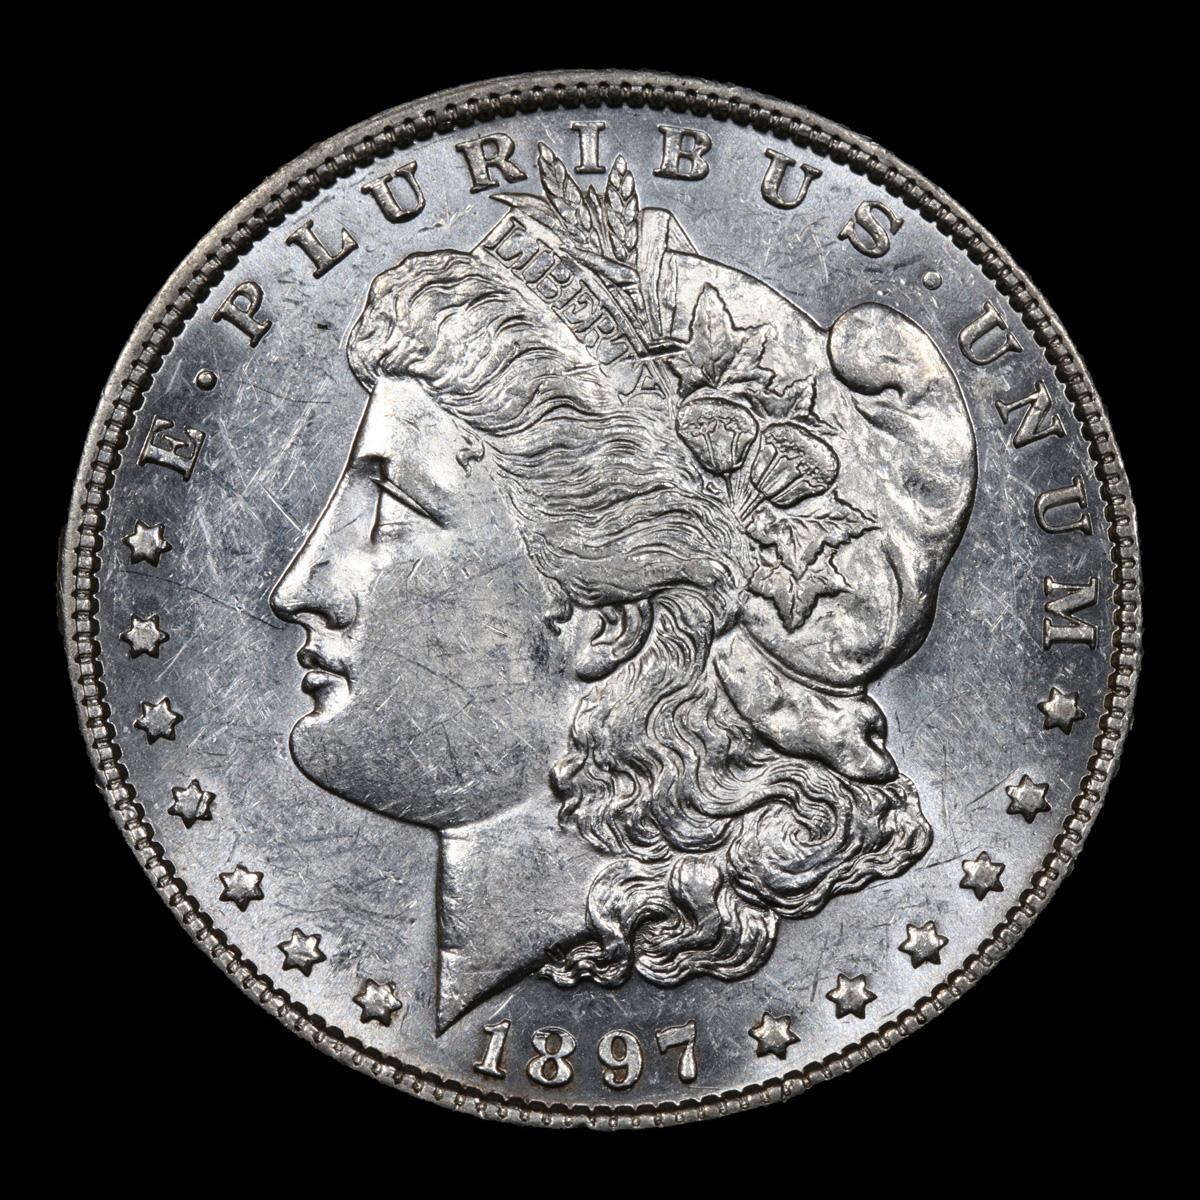 1897-p Morgan Dollar $1 Grades Select Unc